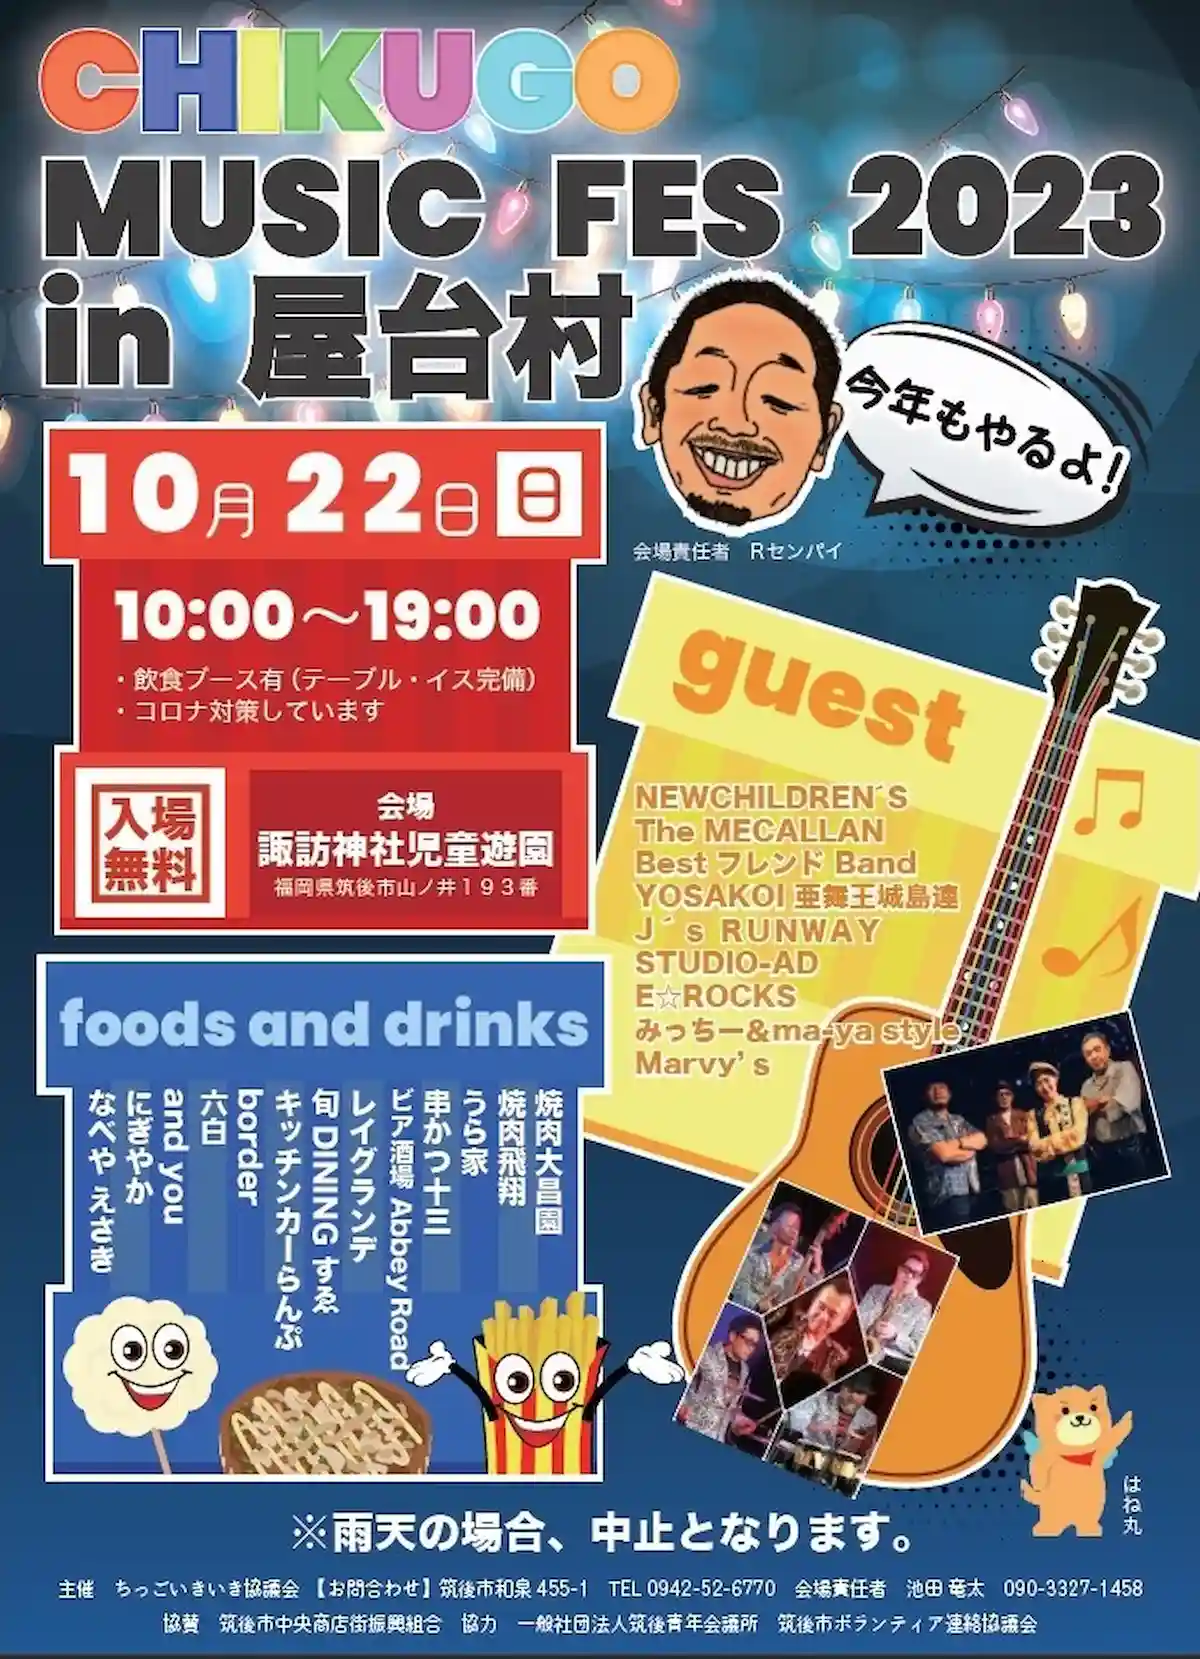 CHIKUGO MUSIC FES 2023 in 屋台村